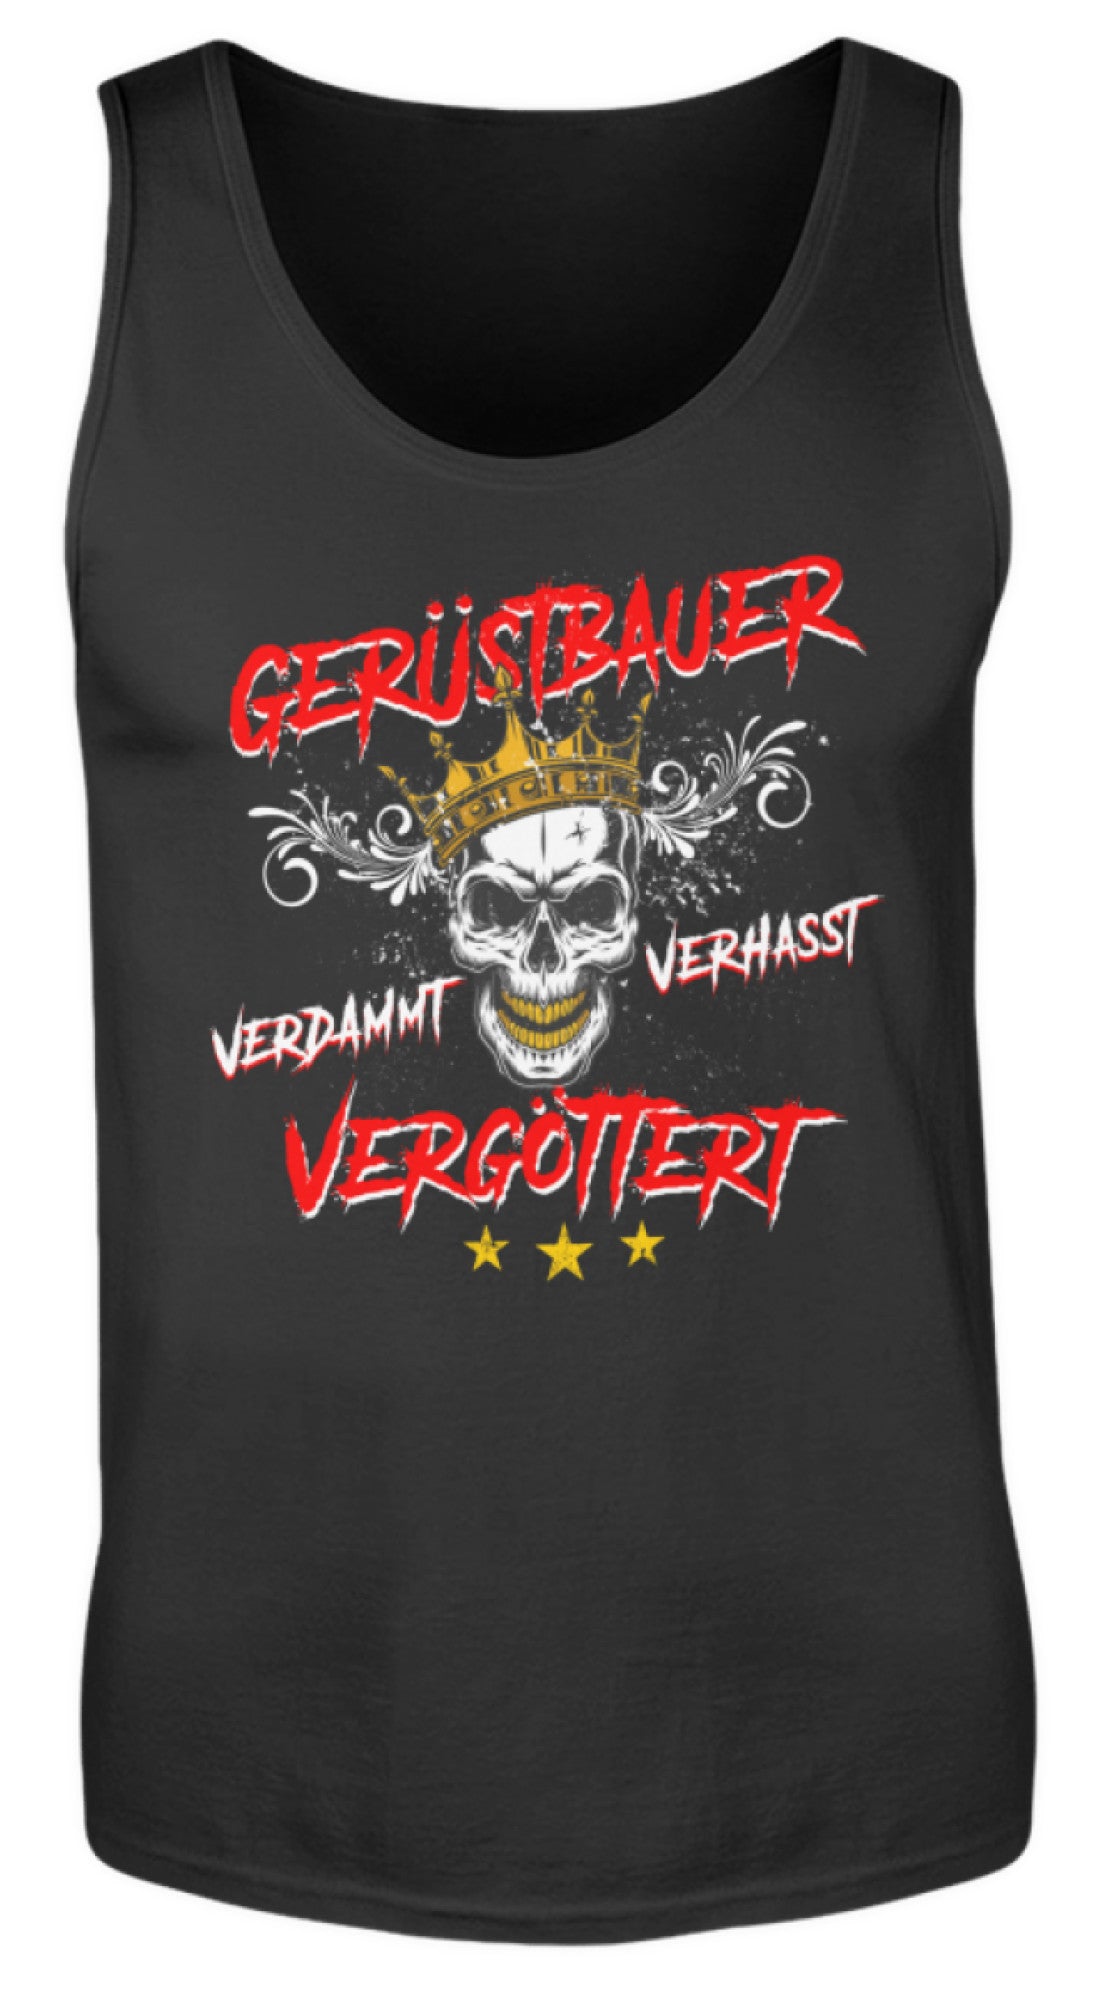 Gerüstbauer / Vergöttert  - Herren Tanktop €19.95 Gerüstbauer - Shop >>